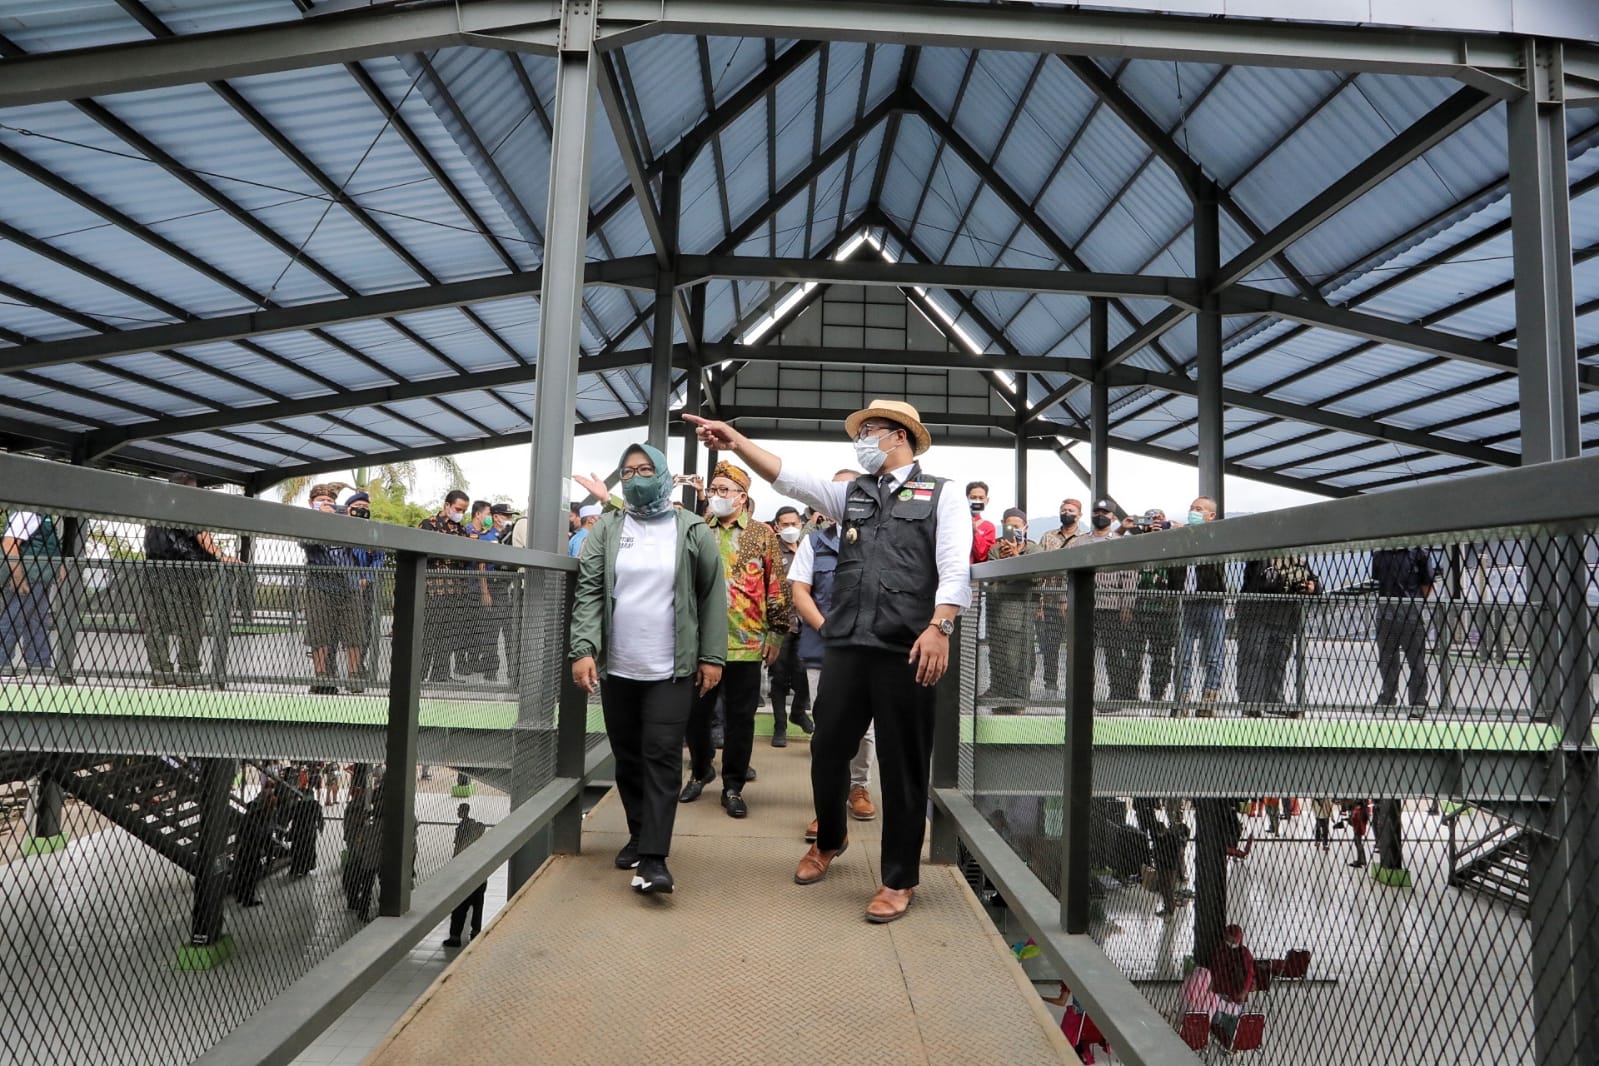 PASAR JUARA: Gubernur Jabar Ridwan Kamil dan Bupati Bogor Hj Ade Yasin memeriksa kondisi bangunan pasar yang baru saja direvitalisasi.